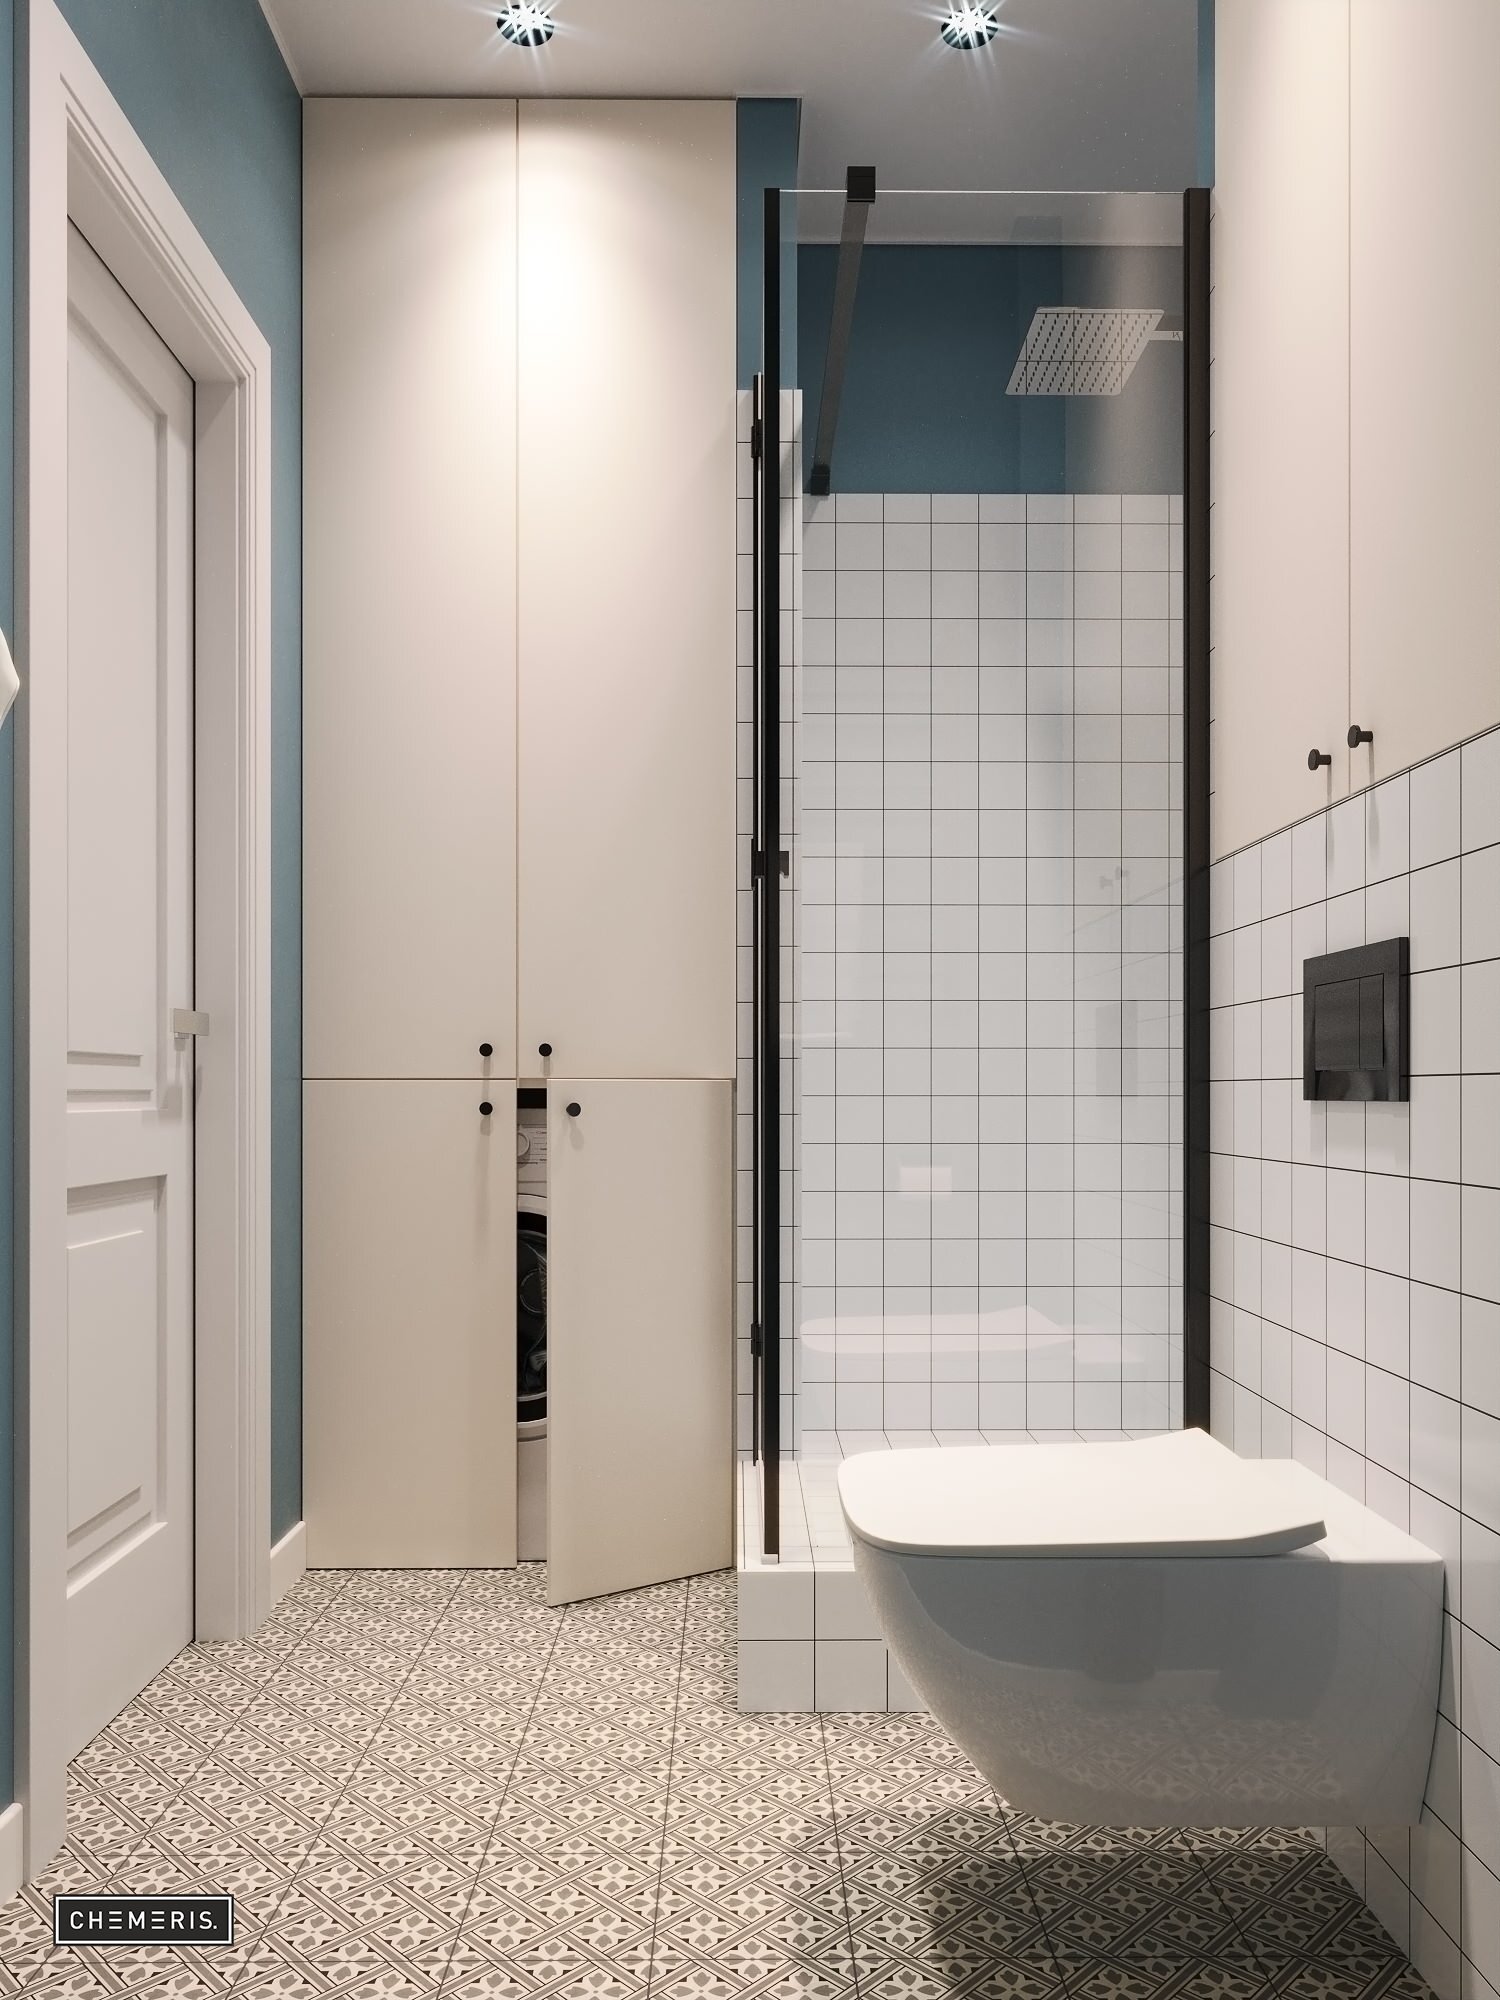 Интерьер ванной с душевой из плитки и зеркалом на двери в современном стиле